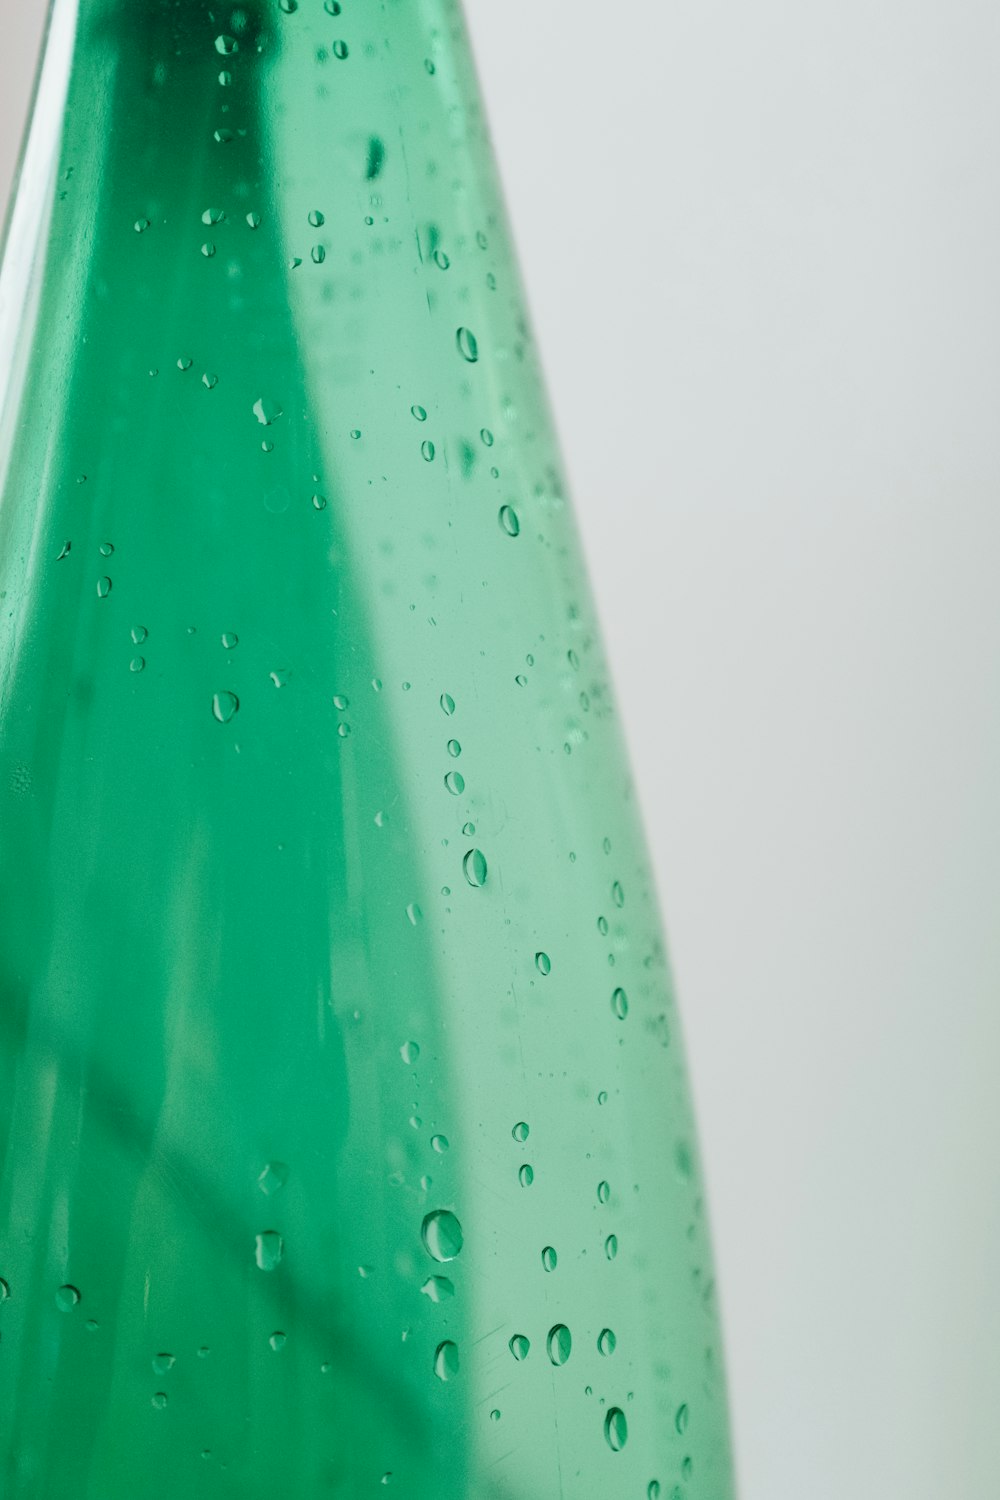 Botella de plástico verde con gotas de agua